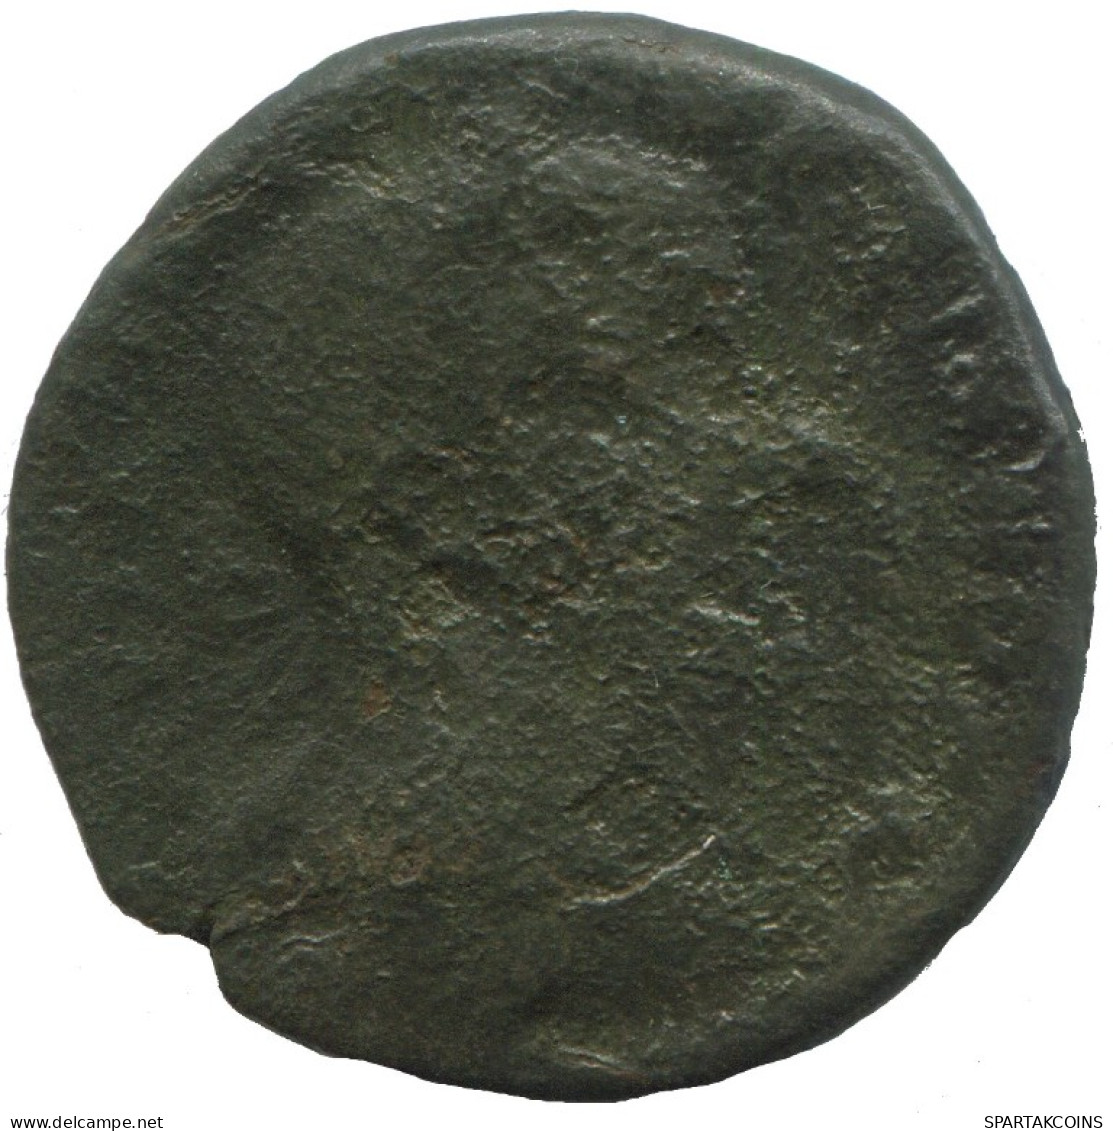 ROMAN PROVINCIAL Authentic Original Ancient Coin 8.3g/26mm #ANN1001.24.U.A - Röm. Provinz